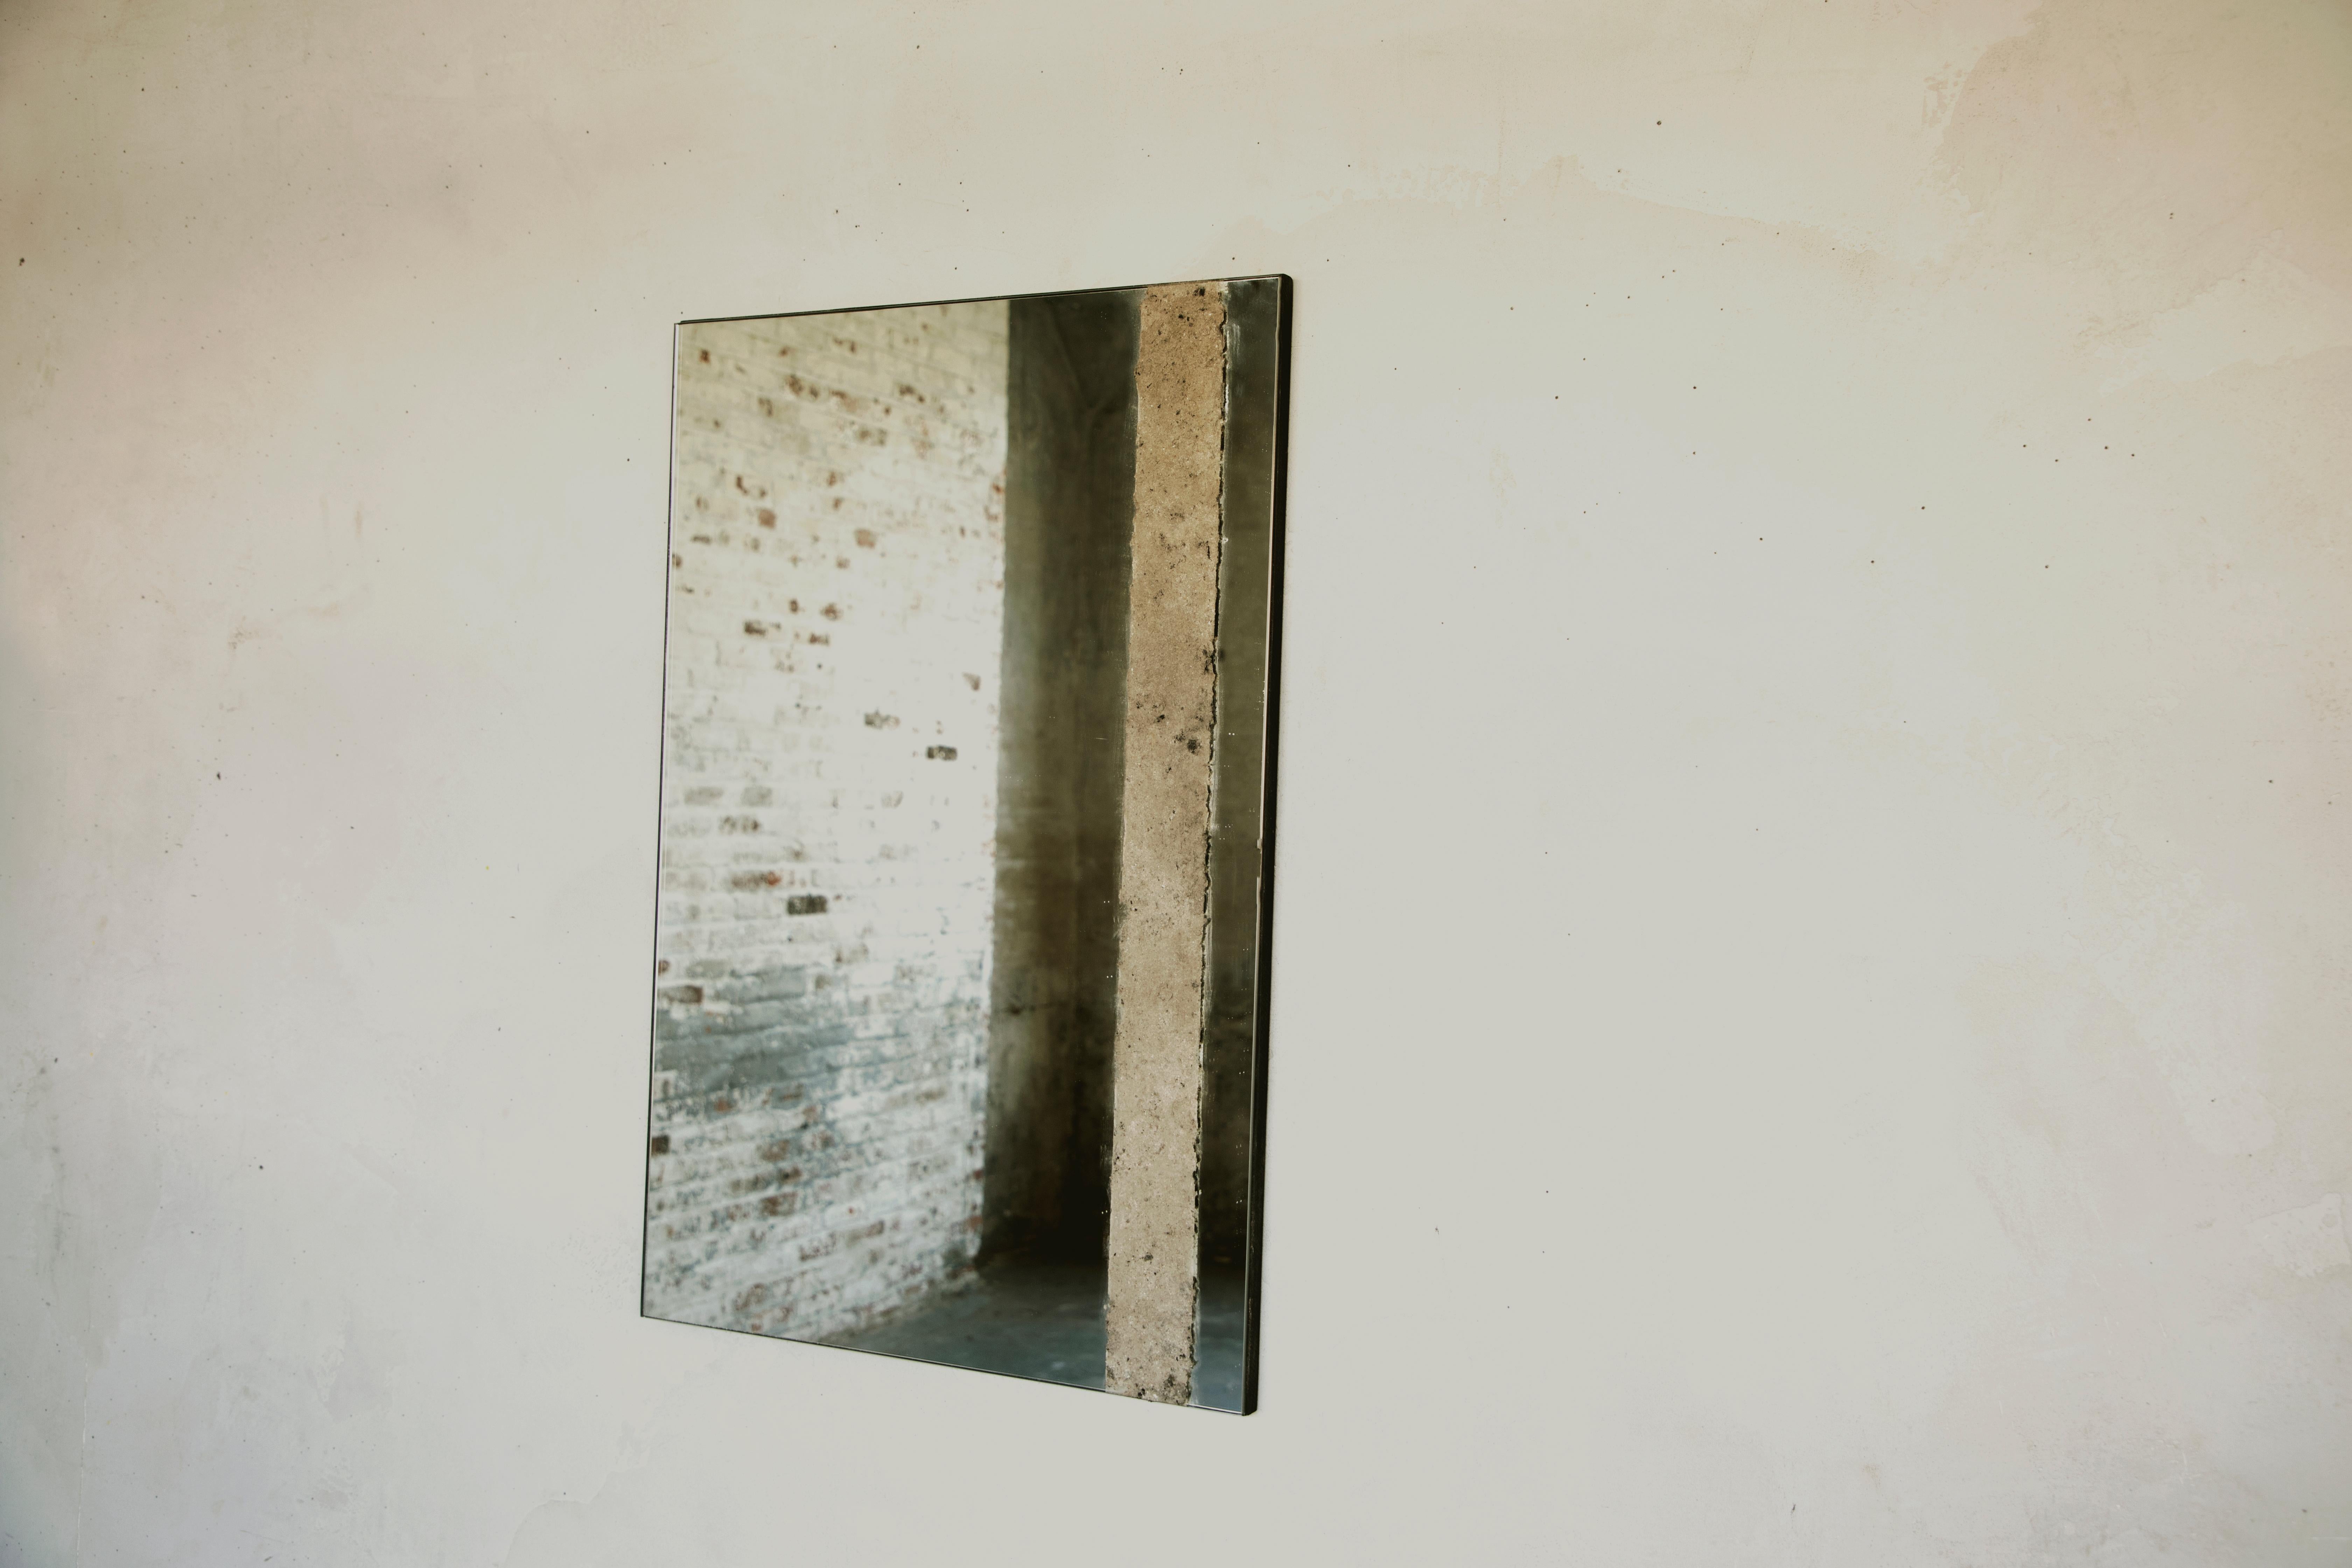 Le miroir carré Pompéi est composé de cendres brûlées qui sont étalées et travaillées à la main.

*La forme et la couleur du frêne brûlé sont organiques et peuvent varier d'une pièce à l'autre afin de conserver le caractère unique de la main et de